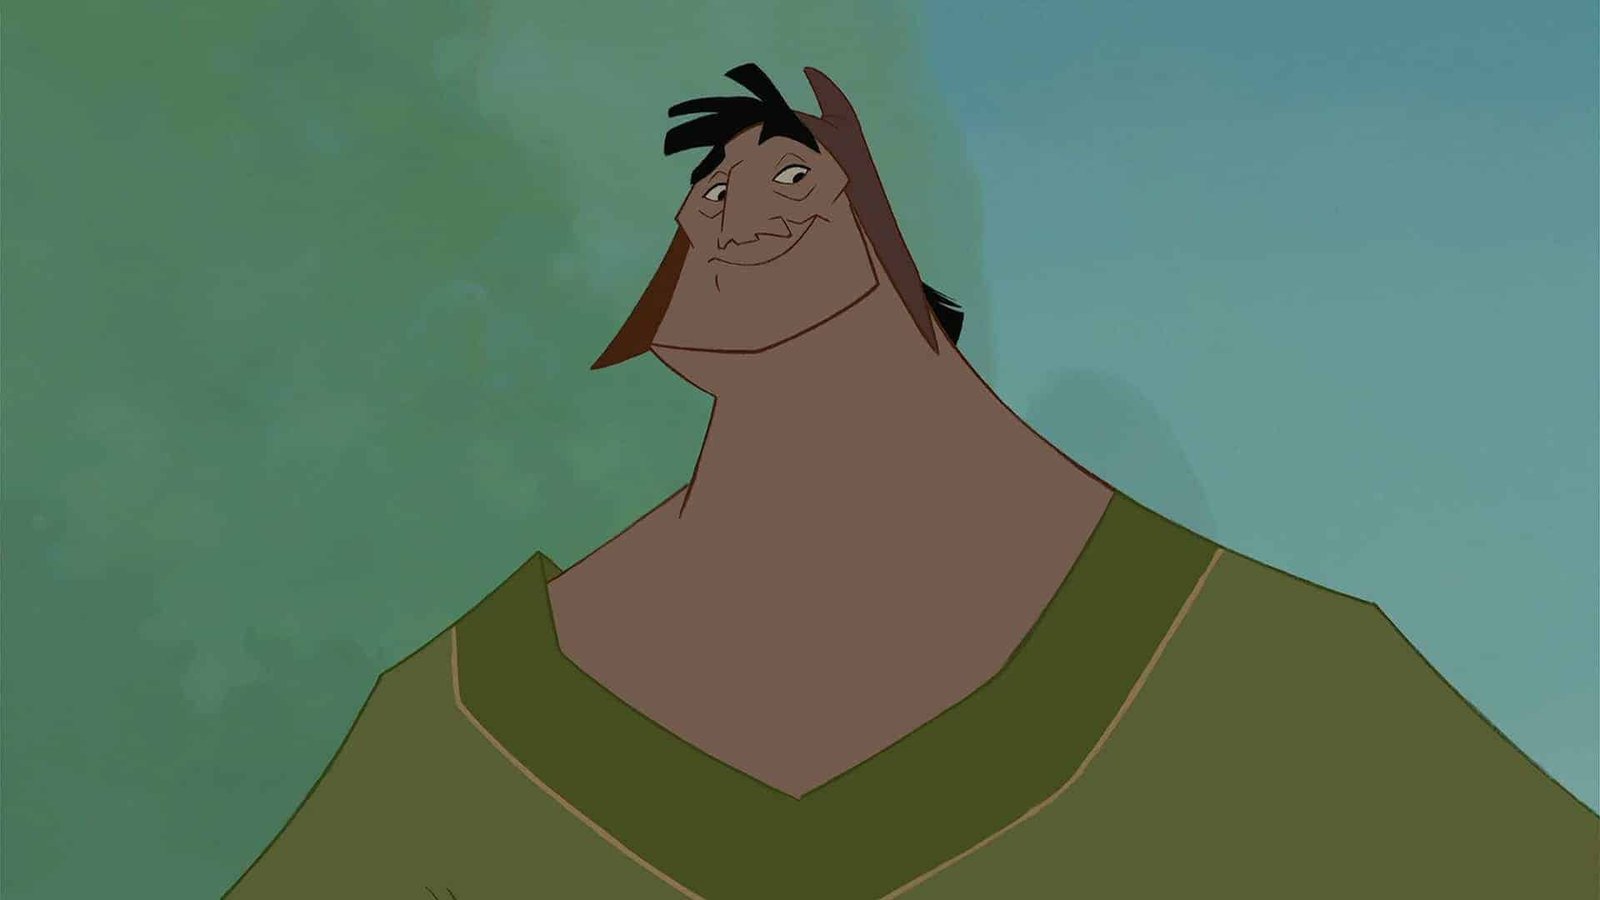 Image animée d'un grand personnage masculin de Disney avec une expression suffisante, avec des cheveux noirs et portant une tunique verte sur un fond vert pâle.